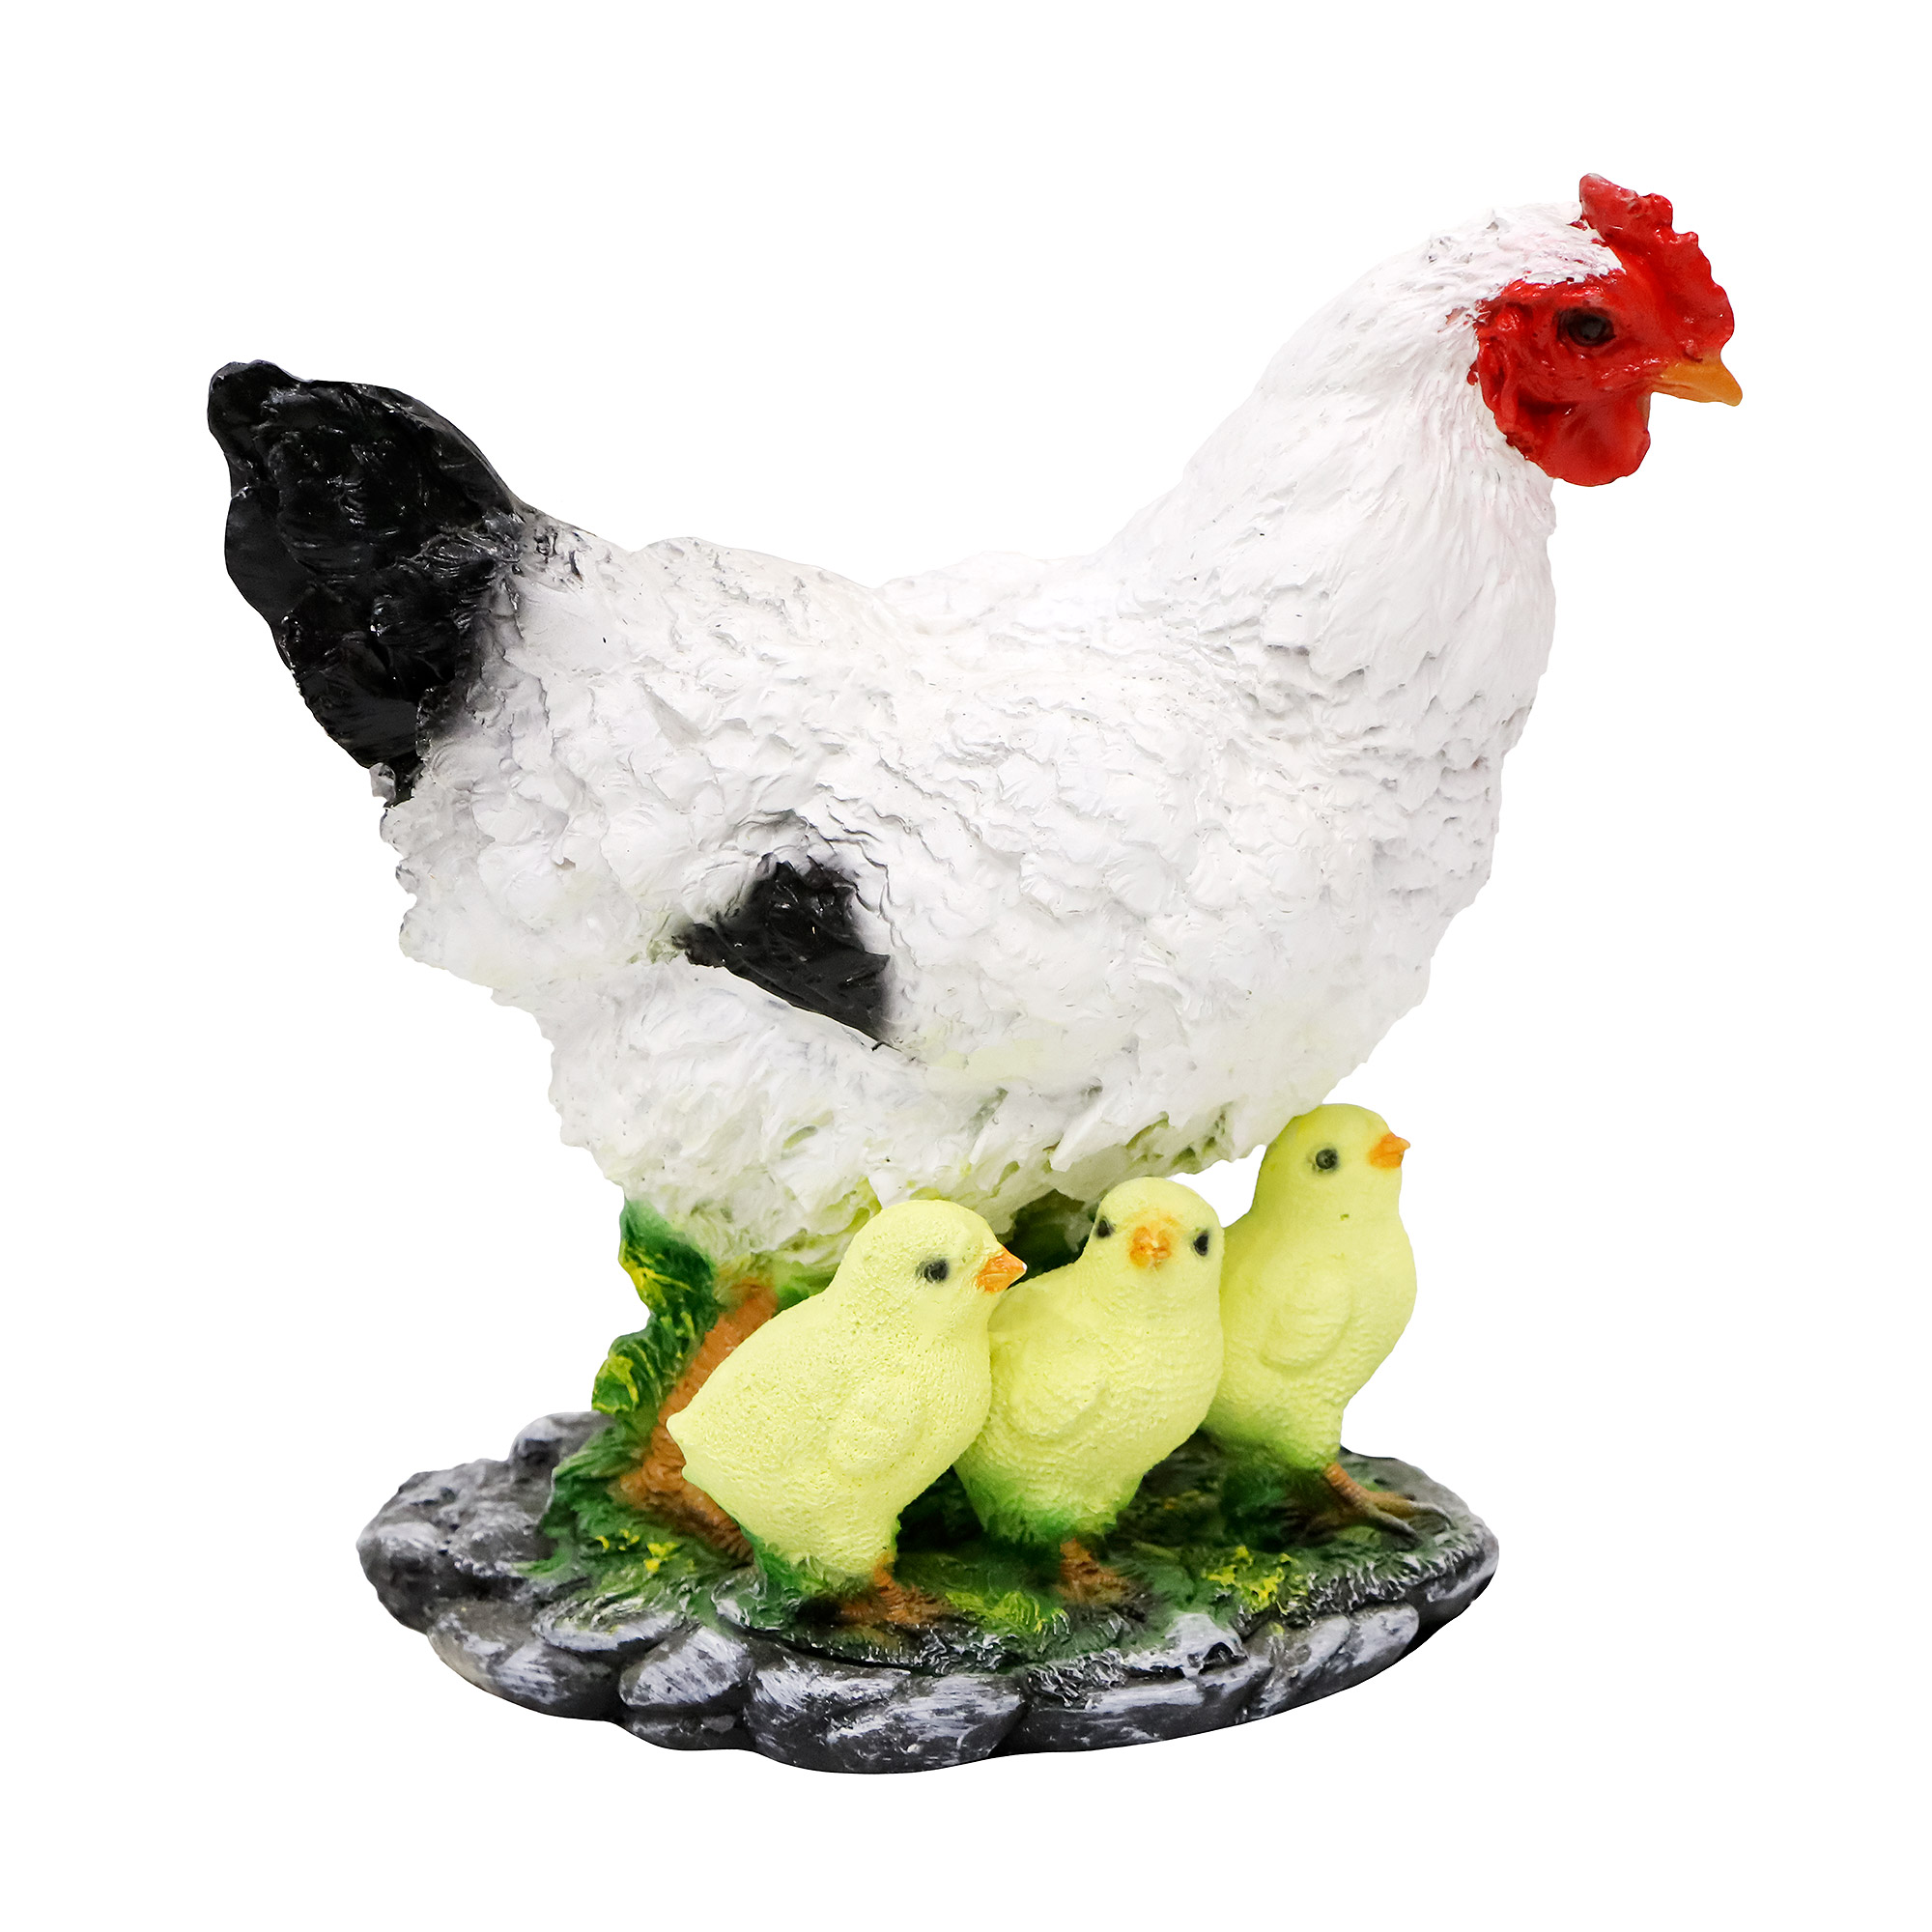 фигура садовая курица мама с детьми тпк полиформ Декоративная садовая фигура Тпк полиформ Курица с тремя цыплятами Н-28см,L30cм